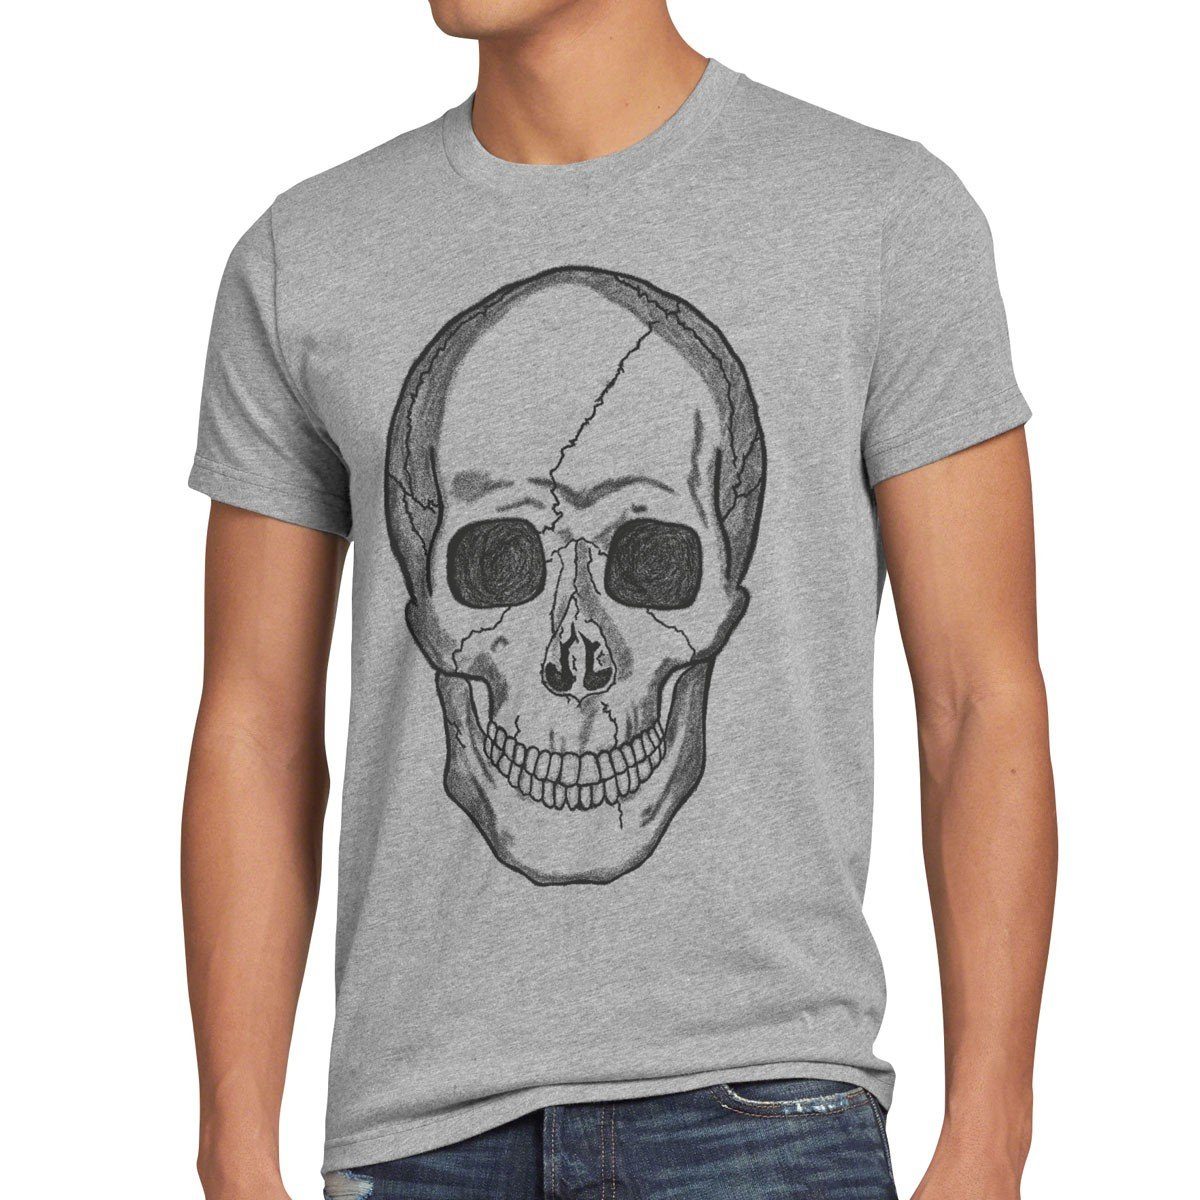 Günstiger Versandhandel! style3 Print-Shirt Herren T-Shirt grau Rocker gothic Totenkopf Skull Harley biker meliert us Punk Tattoo knochen